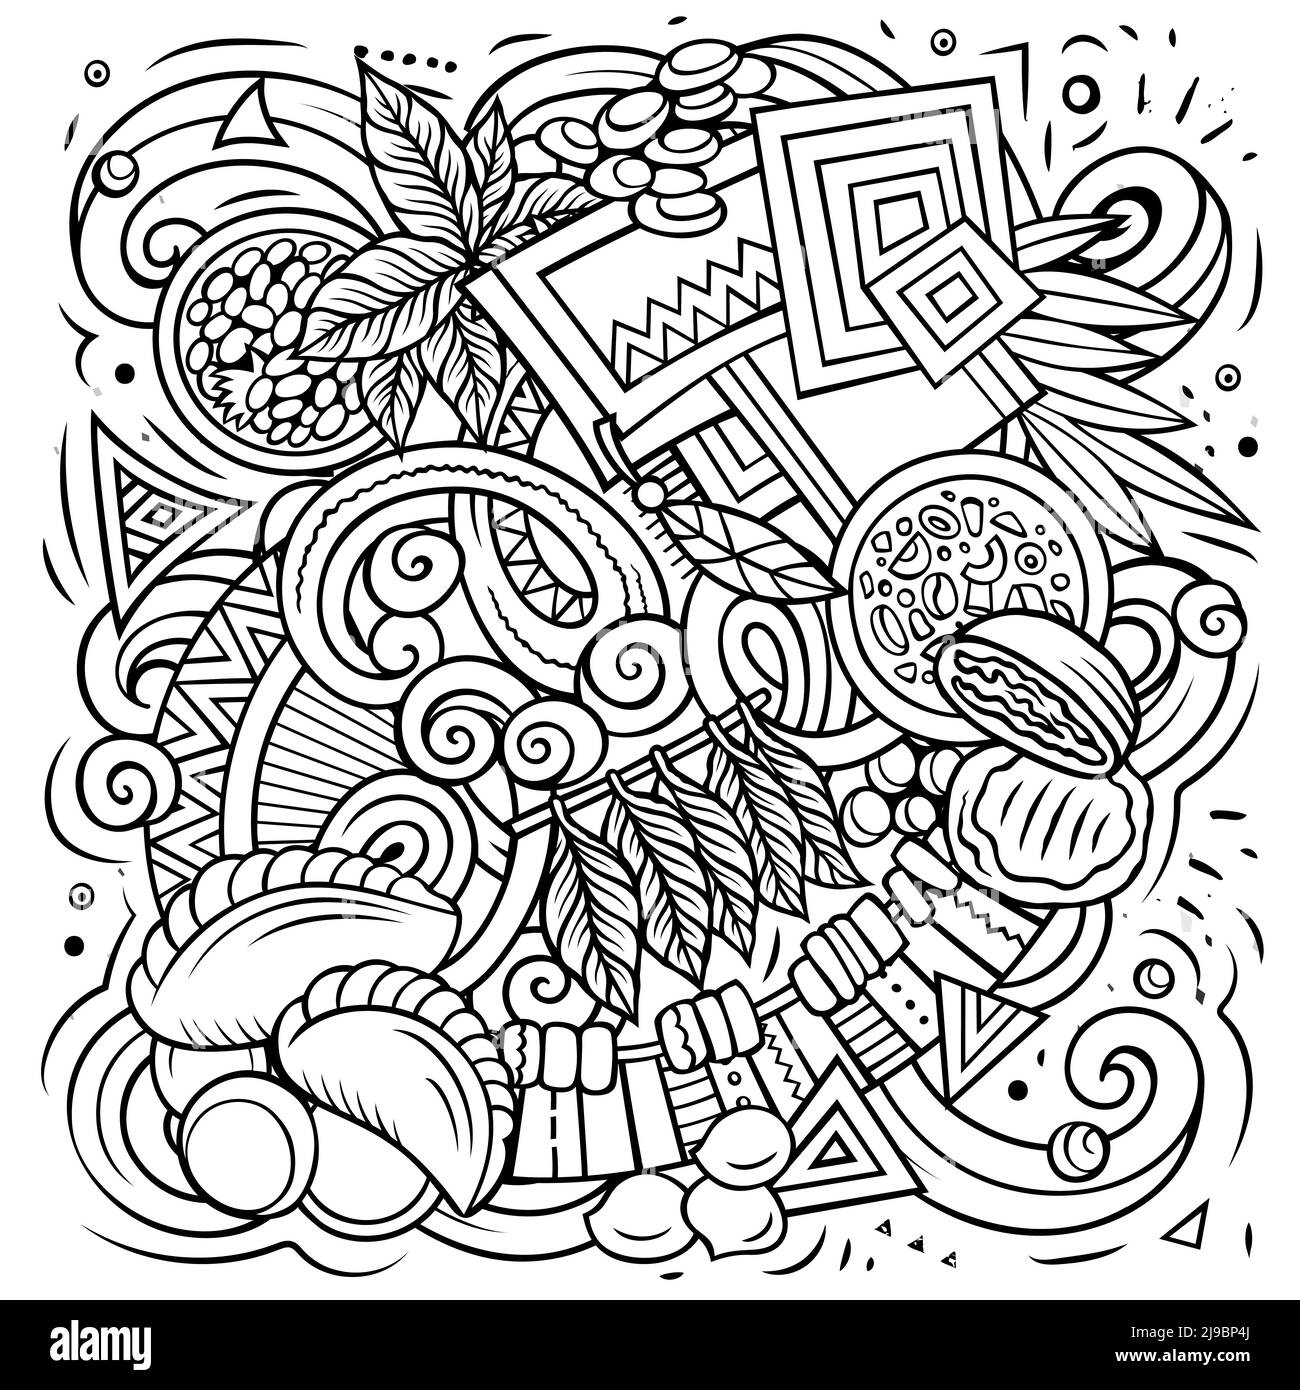 Paraguay disegno a mano cartoon doodles illustrazione. Illustrazione Vettoriale